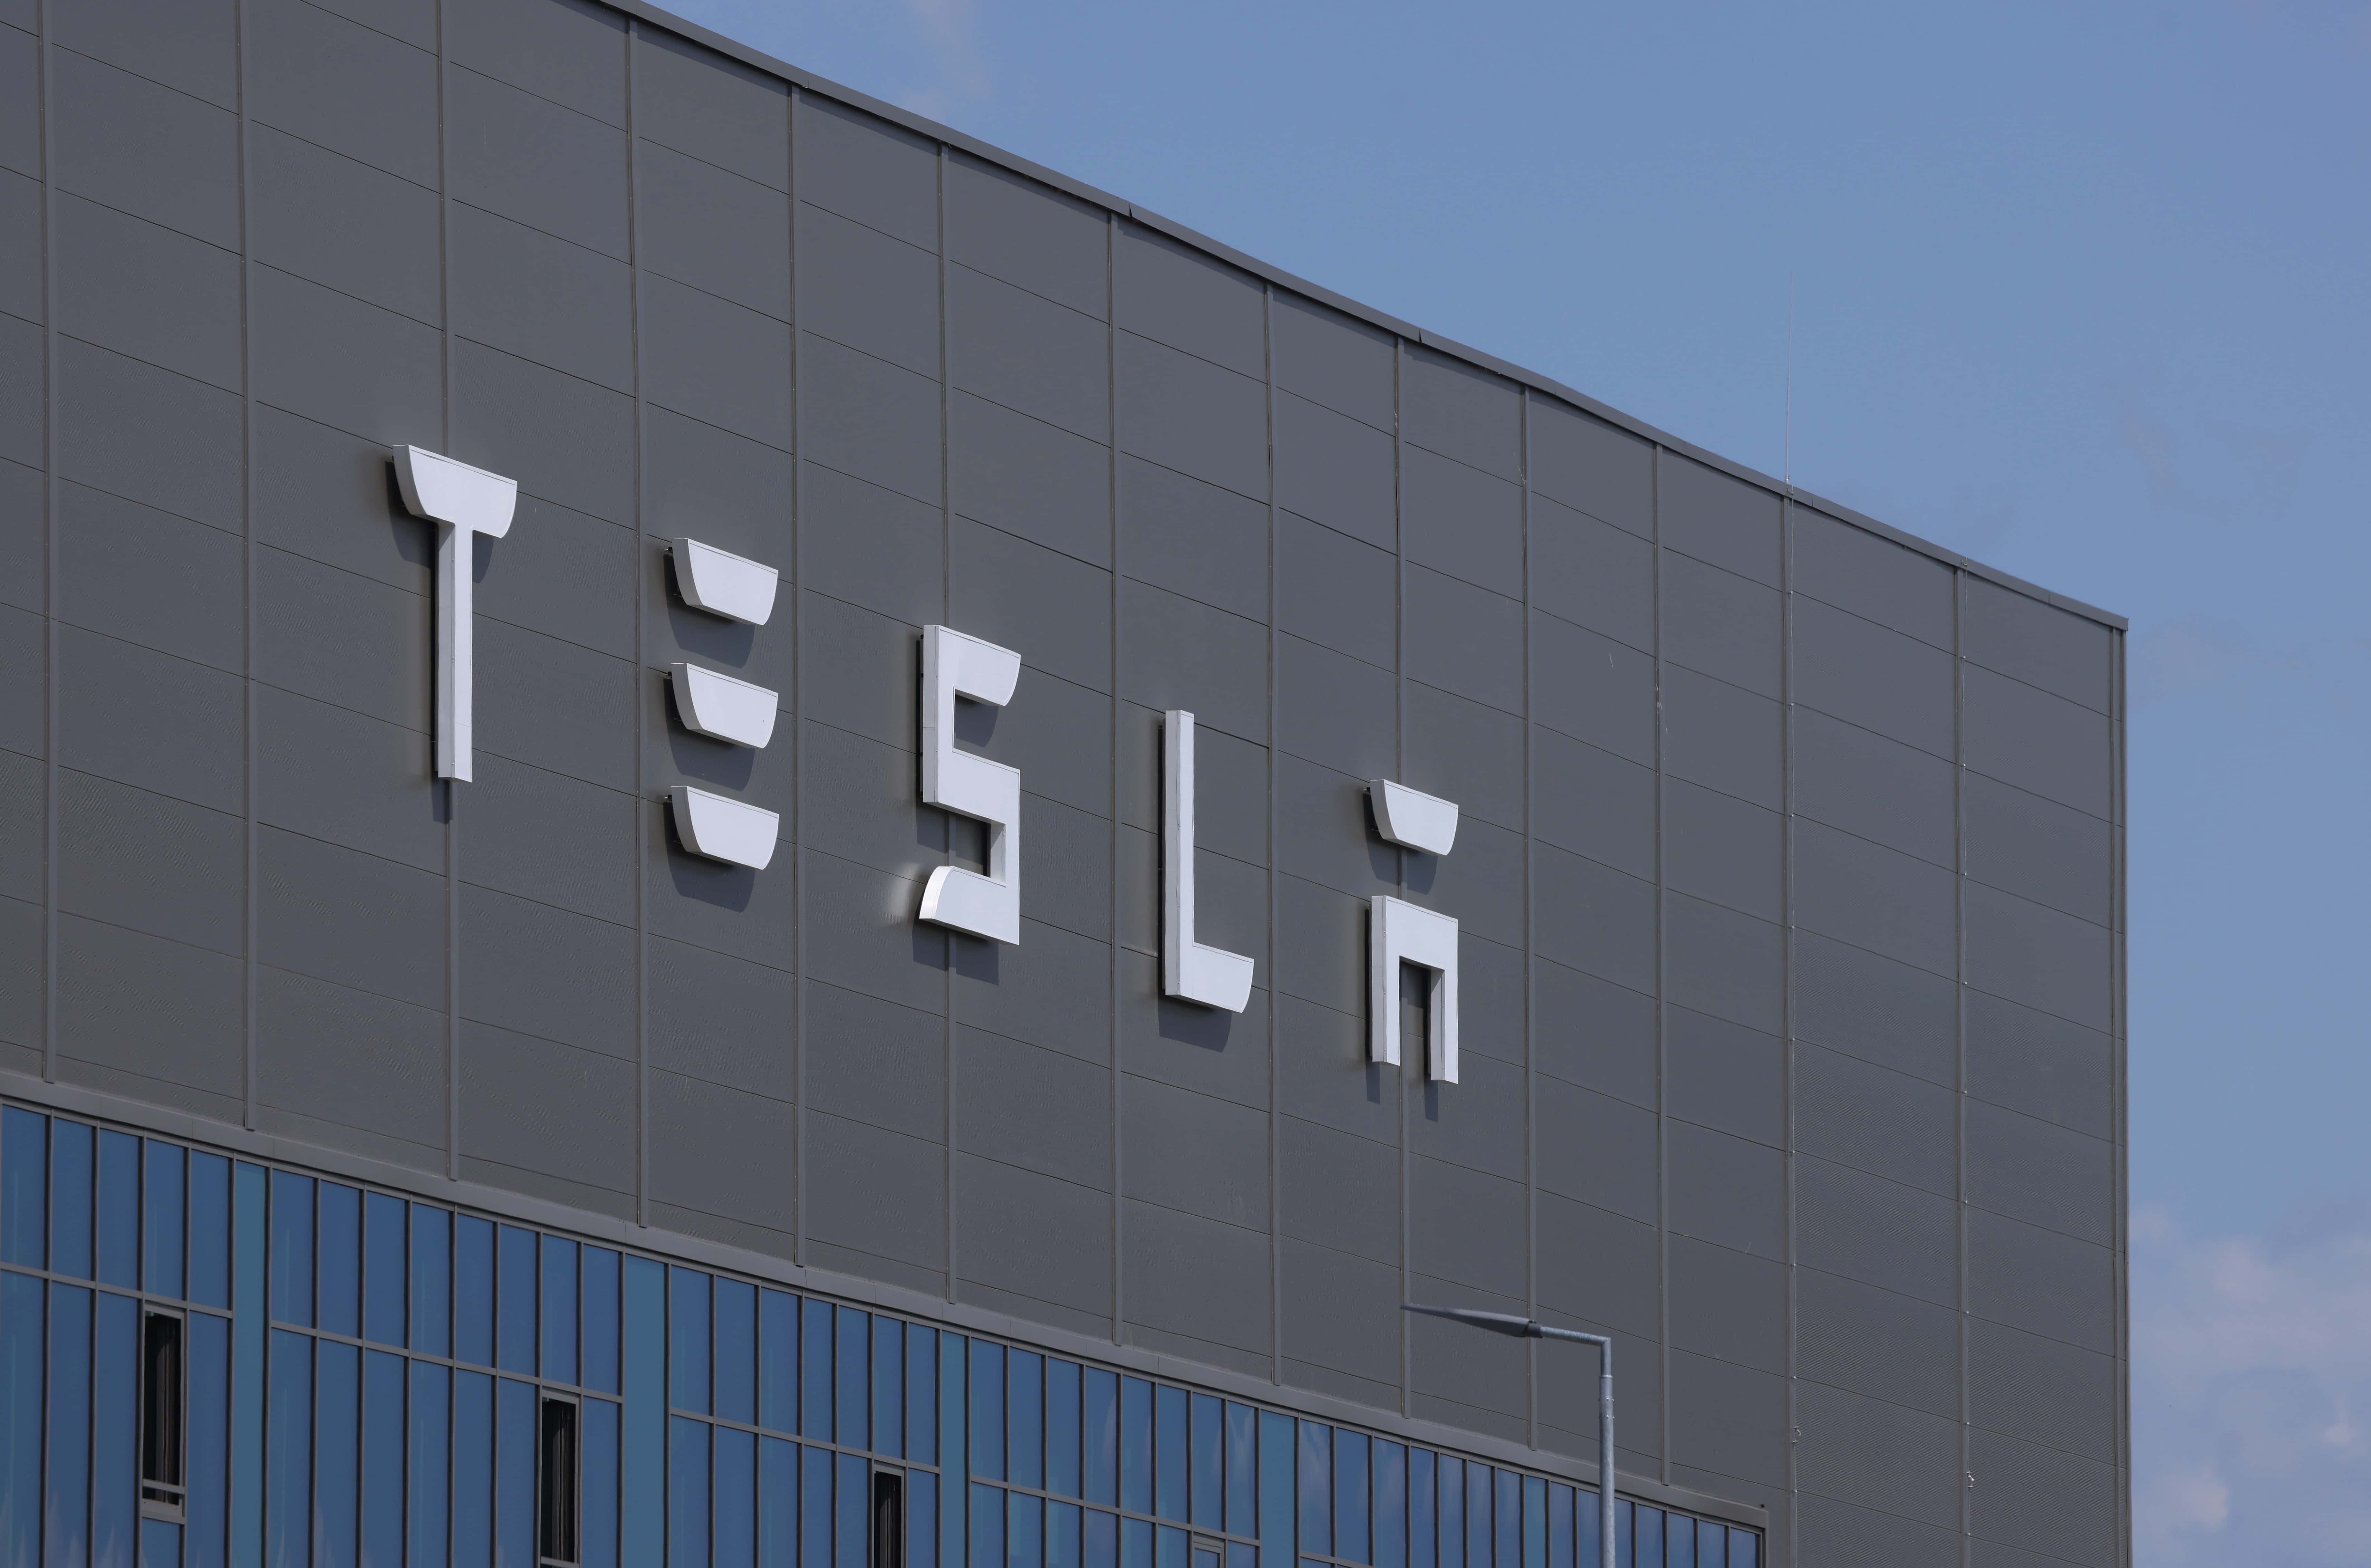 30 березня 2018 року дилерський центр Tesla пропонує автомобілі для продажу в Чикаго, штат Іллінойс. Tesla оголосила про відкликання 123 000 своїх седанів Model S через проблему з болтами гідропідсилювача керма.